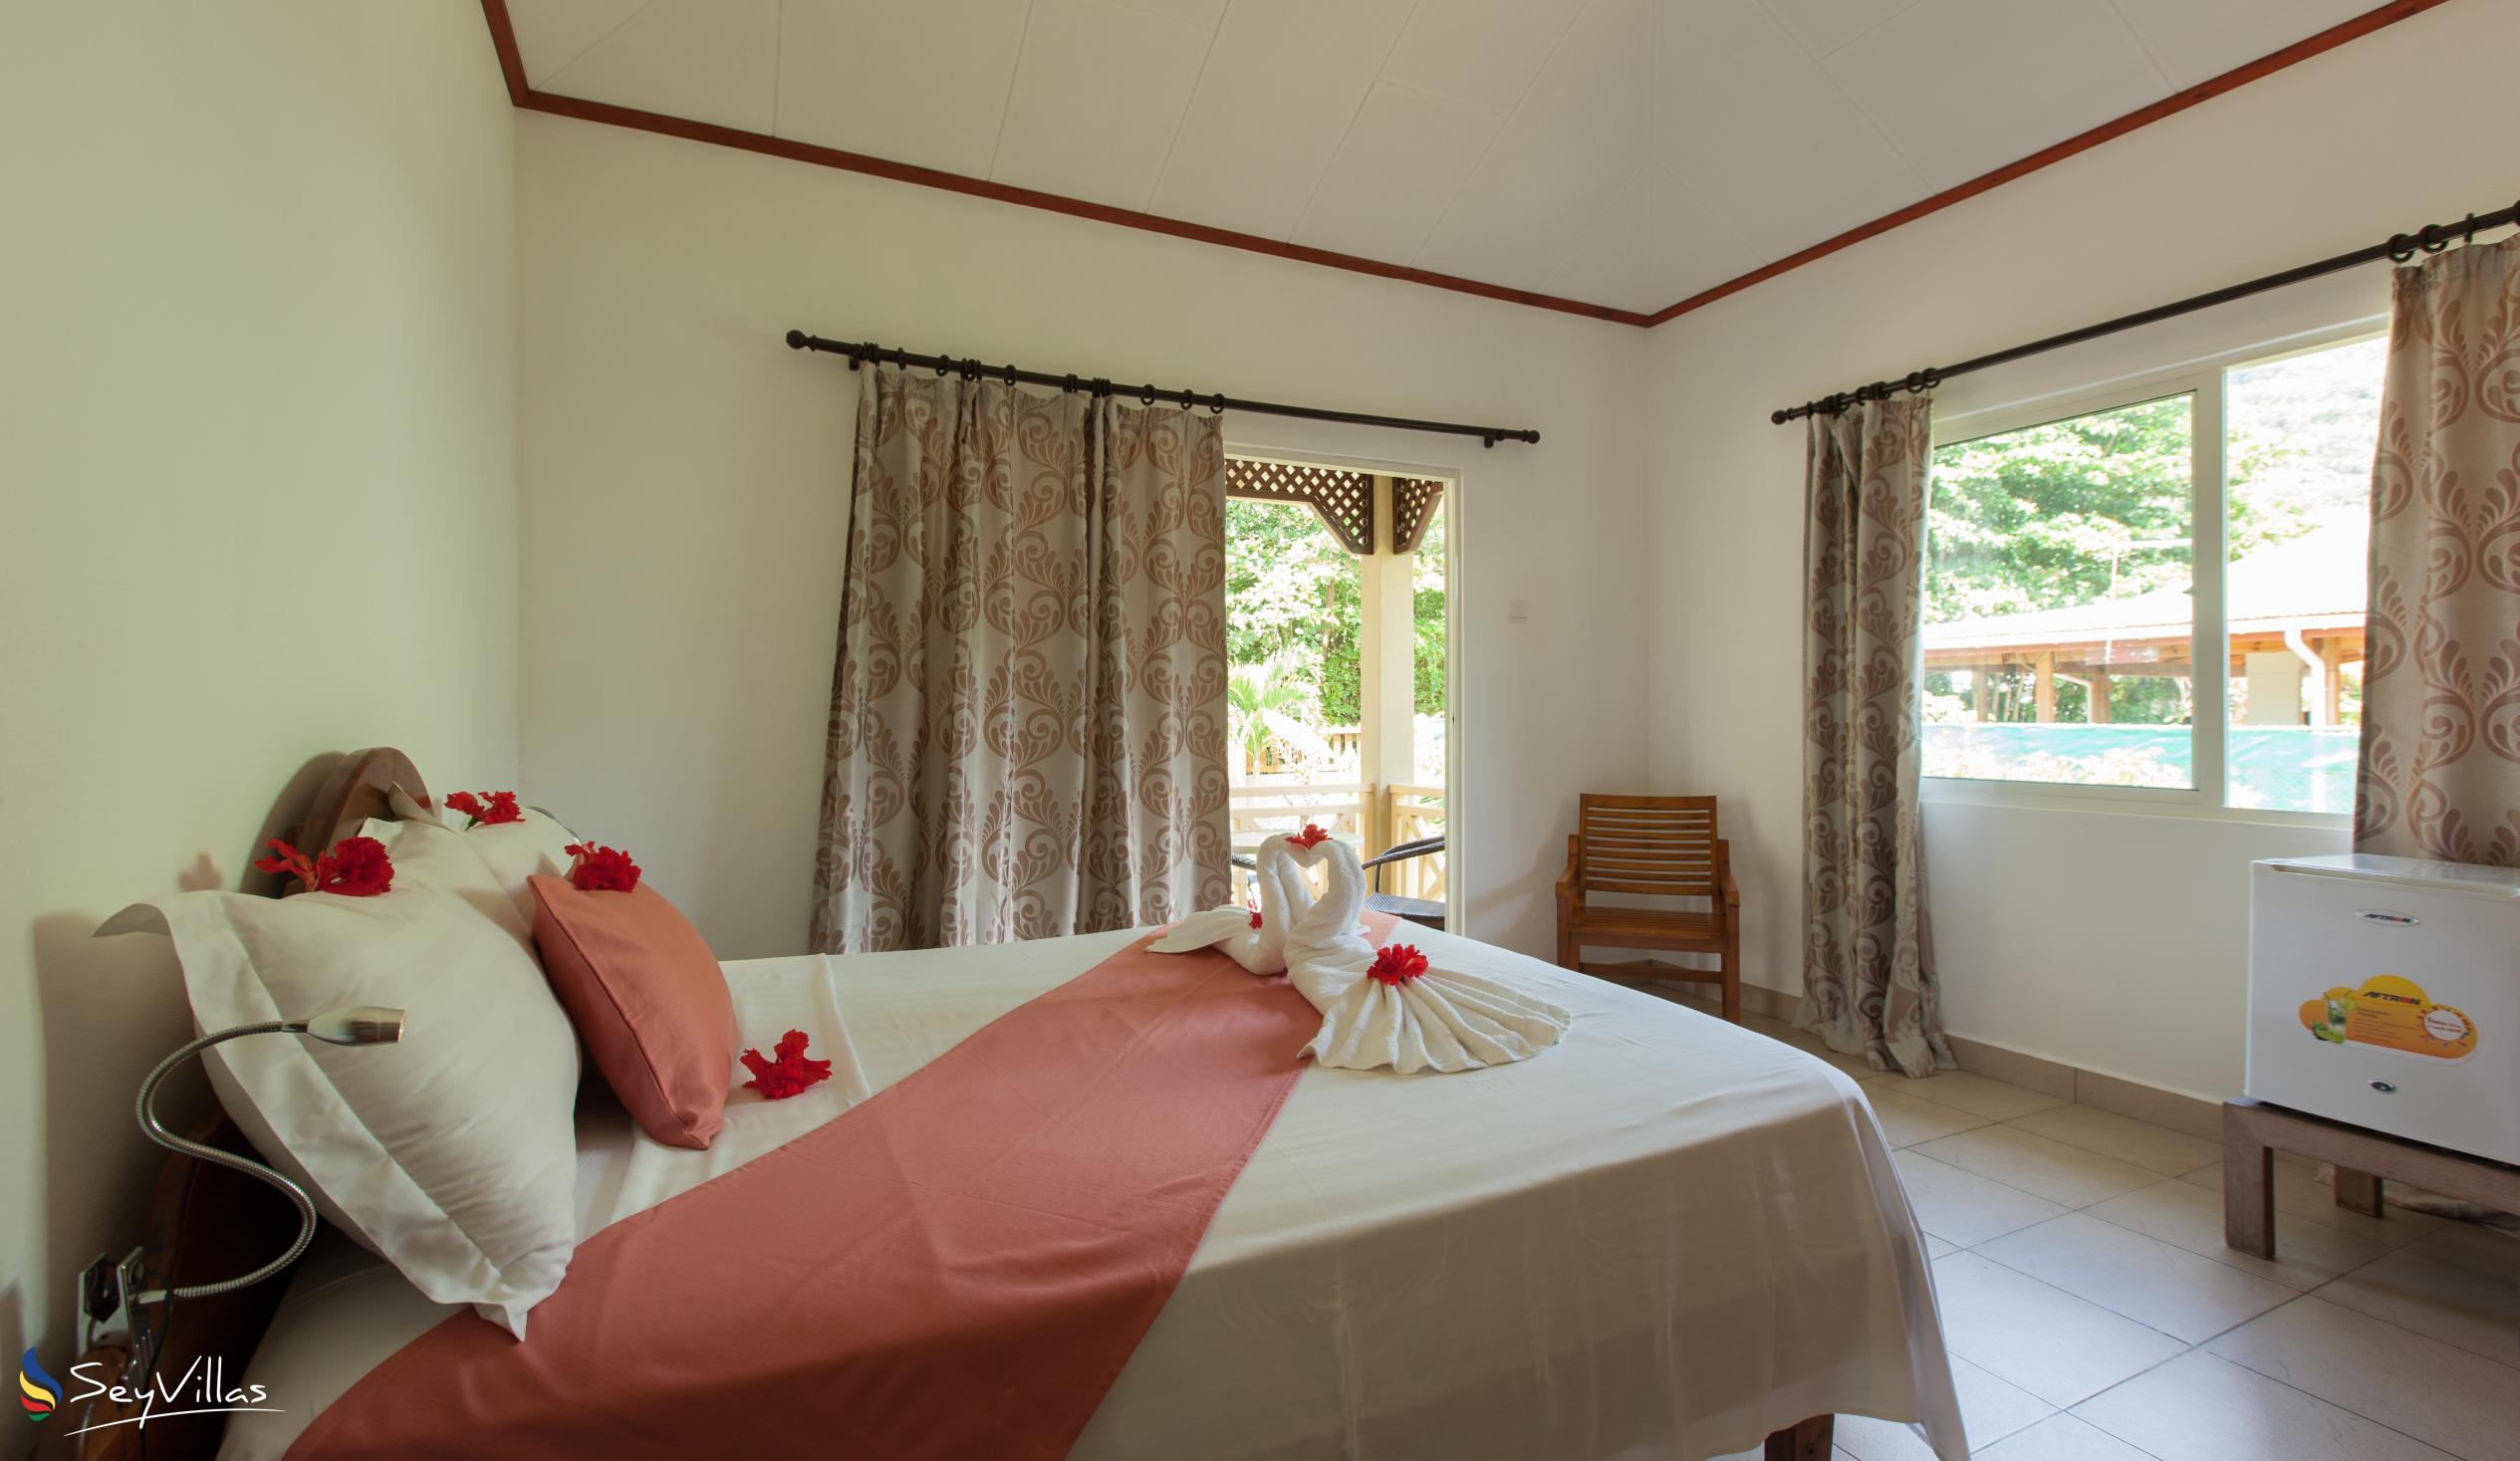 Foto 21: Hostellerie La Digue - Chalet 3 chambres - La Digue (Seychelles)